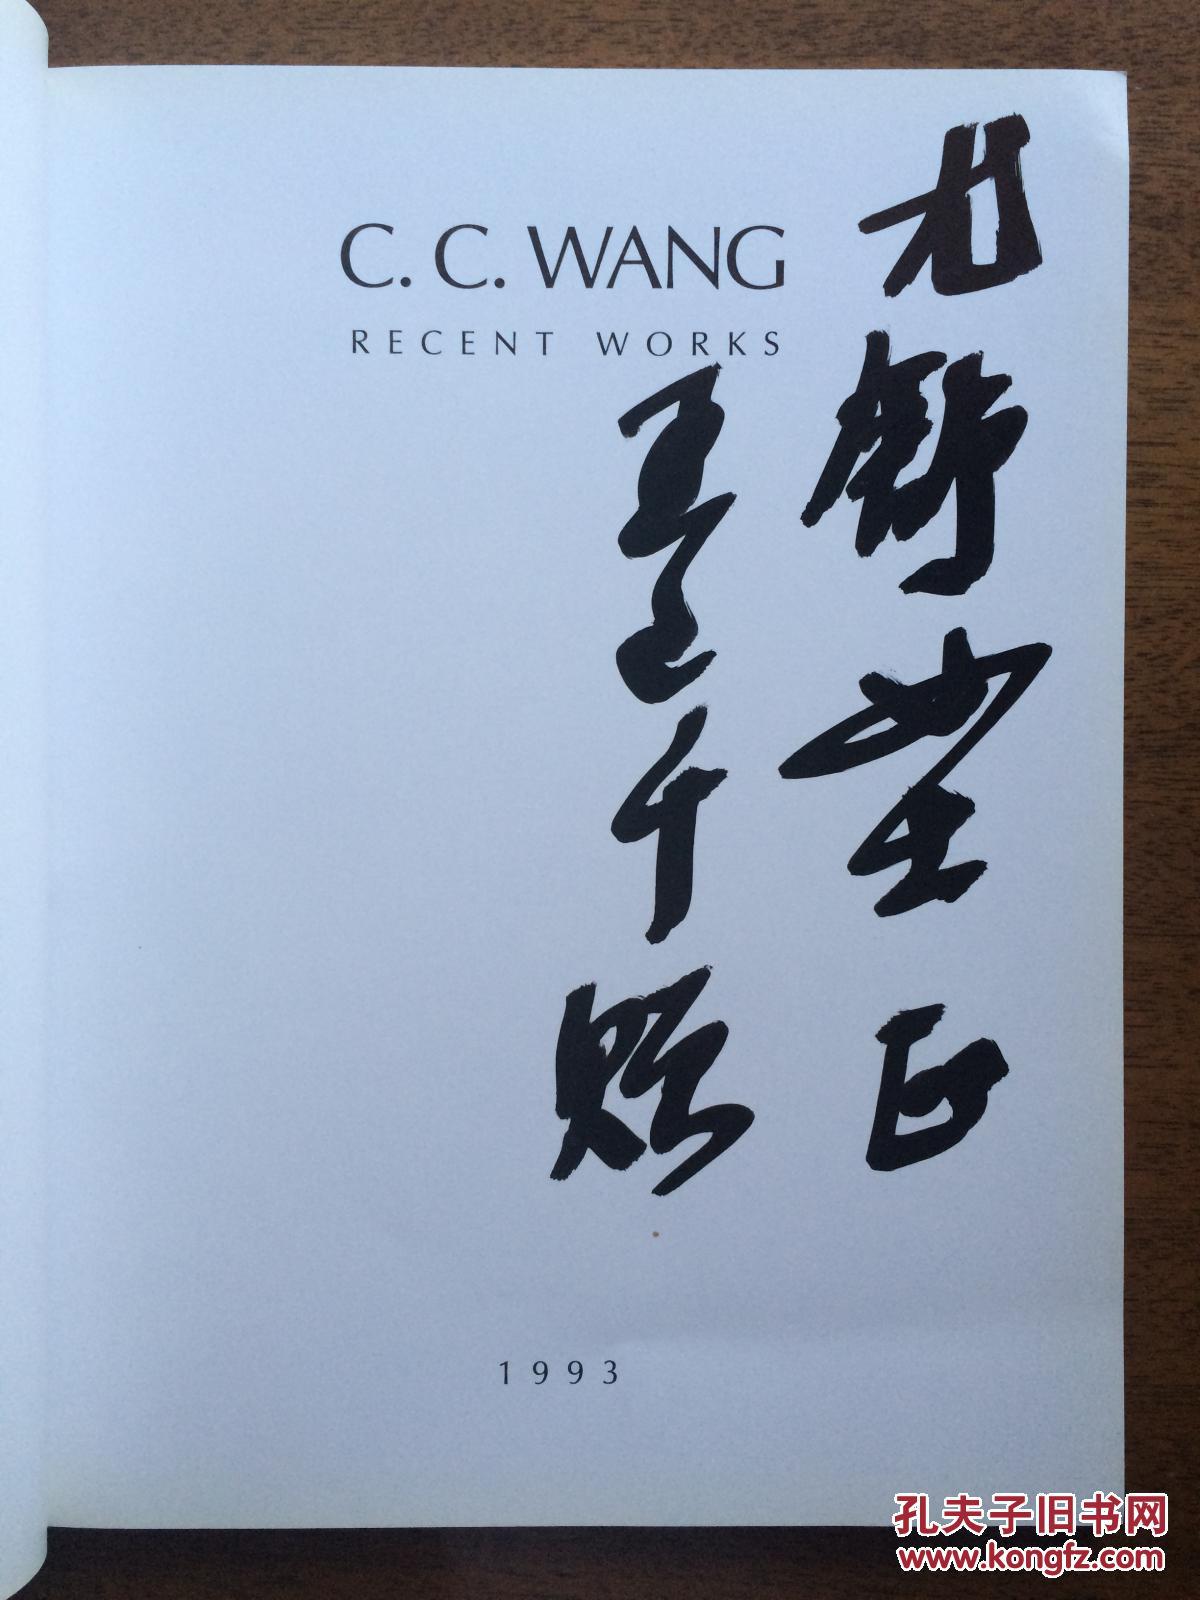 不妄不欺斋之五百二十：王己千毛笔签名本《c.c.wang recent works》